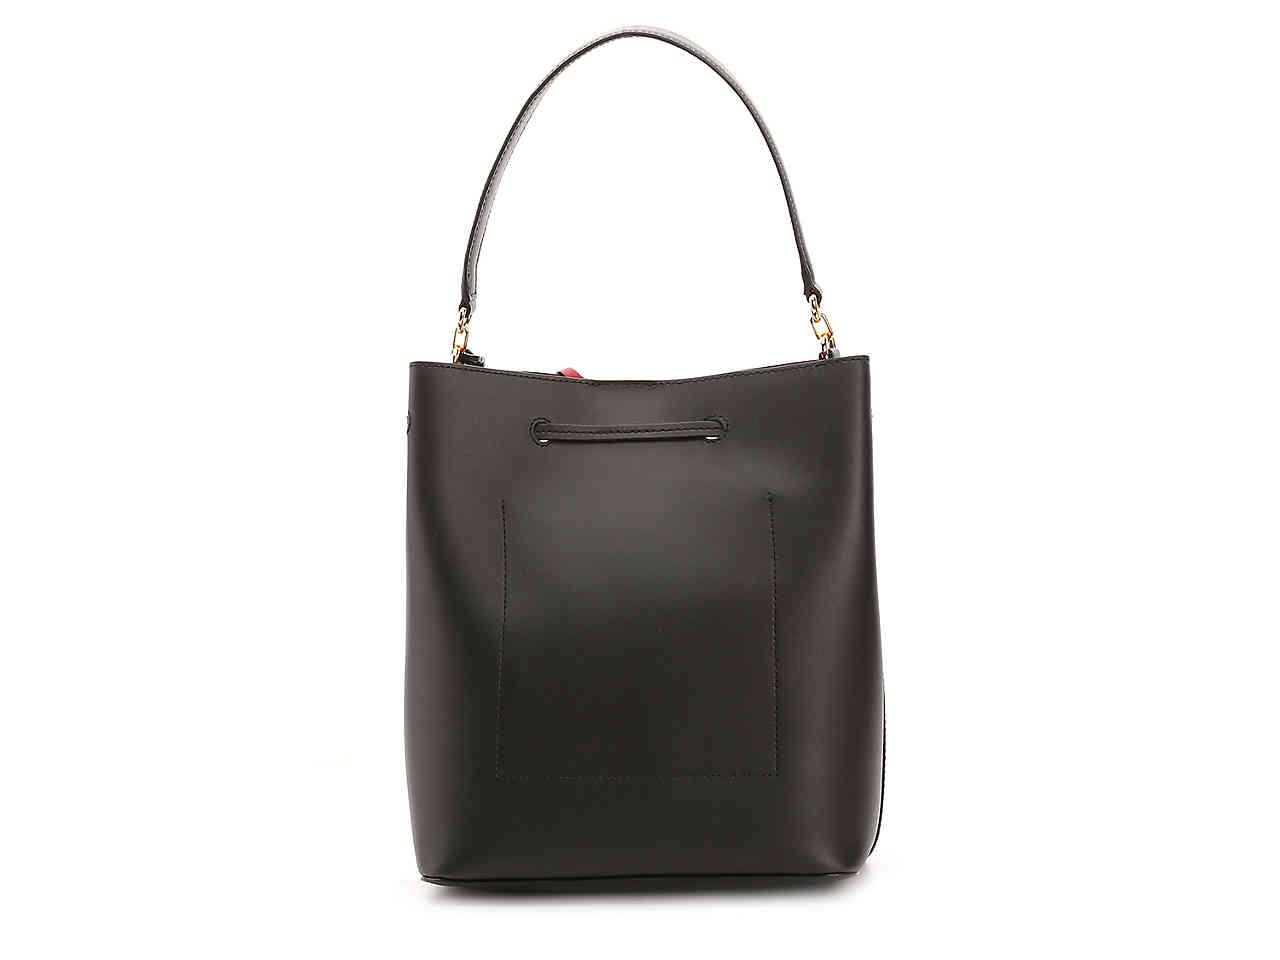 Lauren by Ralph Lauren Dryden Debby Leather Shoulder Bag in Black | Lyst